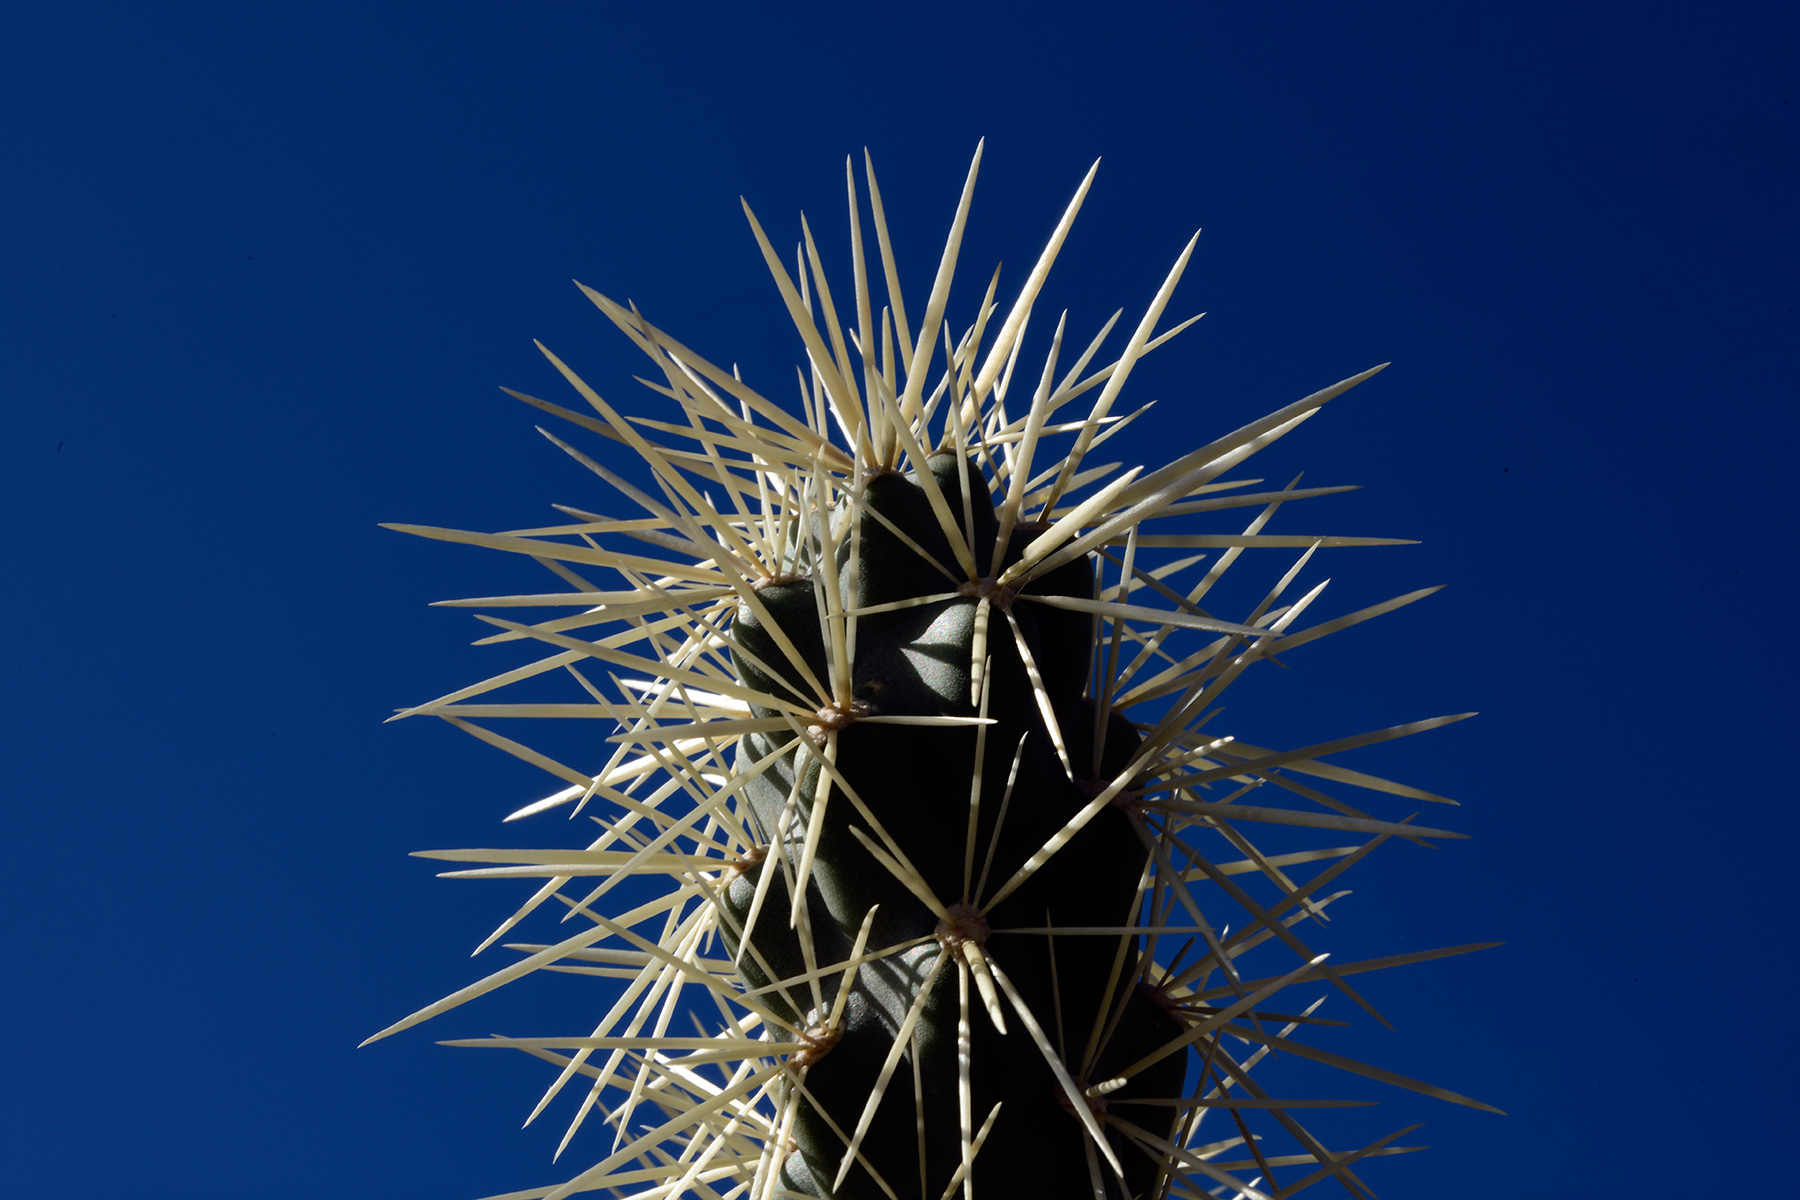 Parc National de Organ Pipe Cactus (Arizona, USA) - Sommet d'un jeune cactus Saguaro avec ses épines blanches